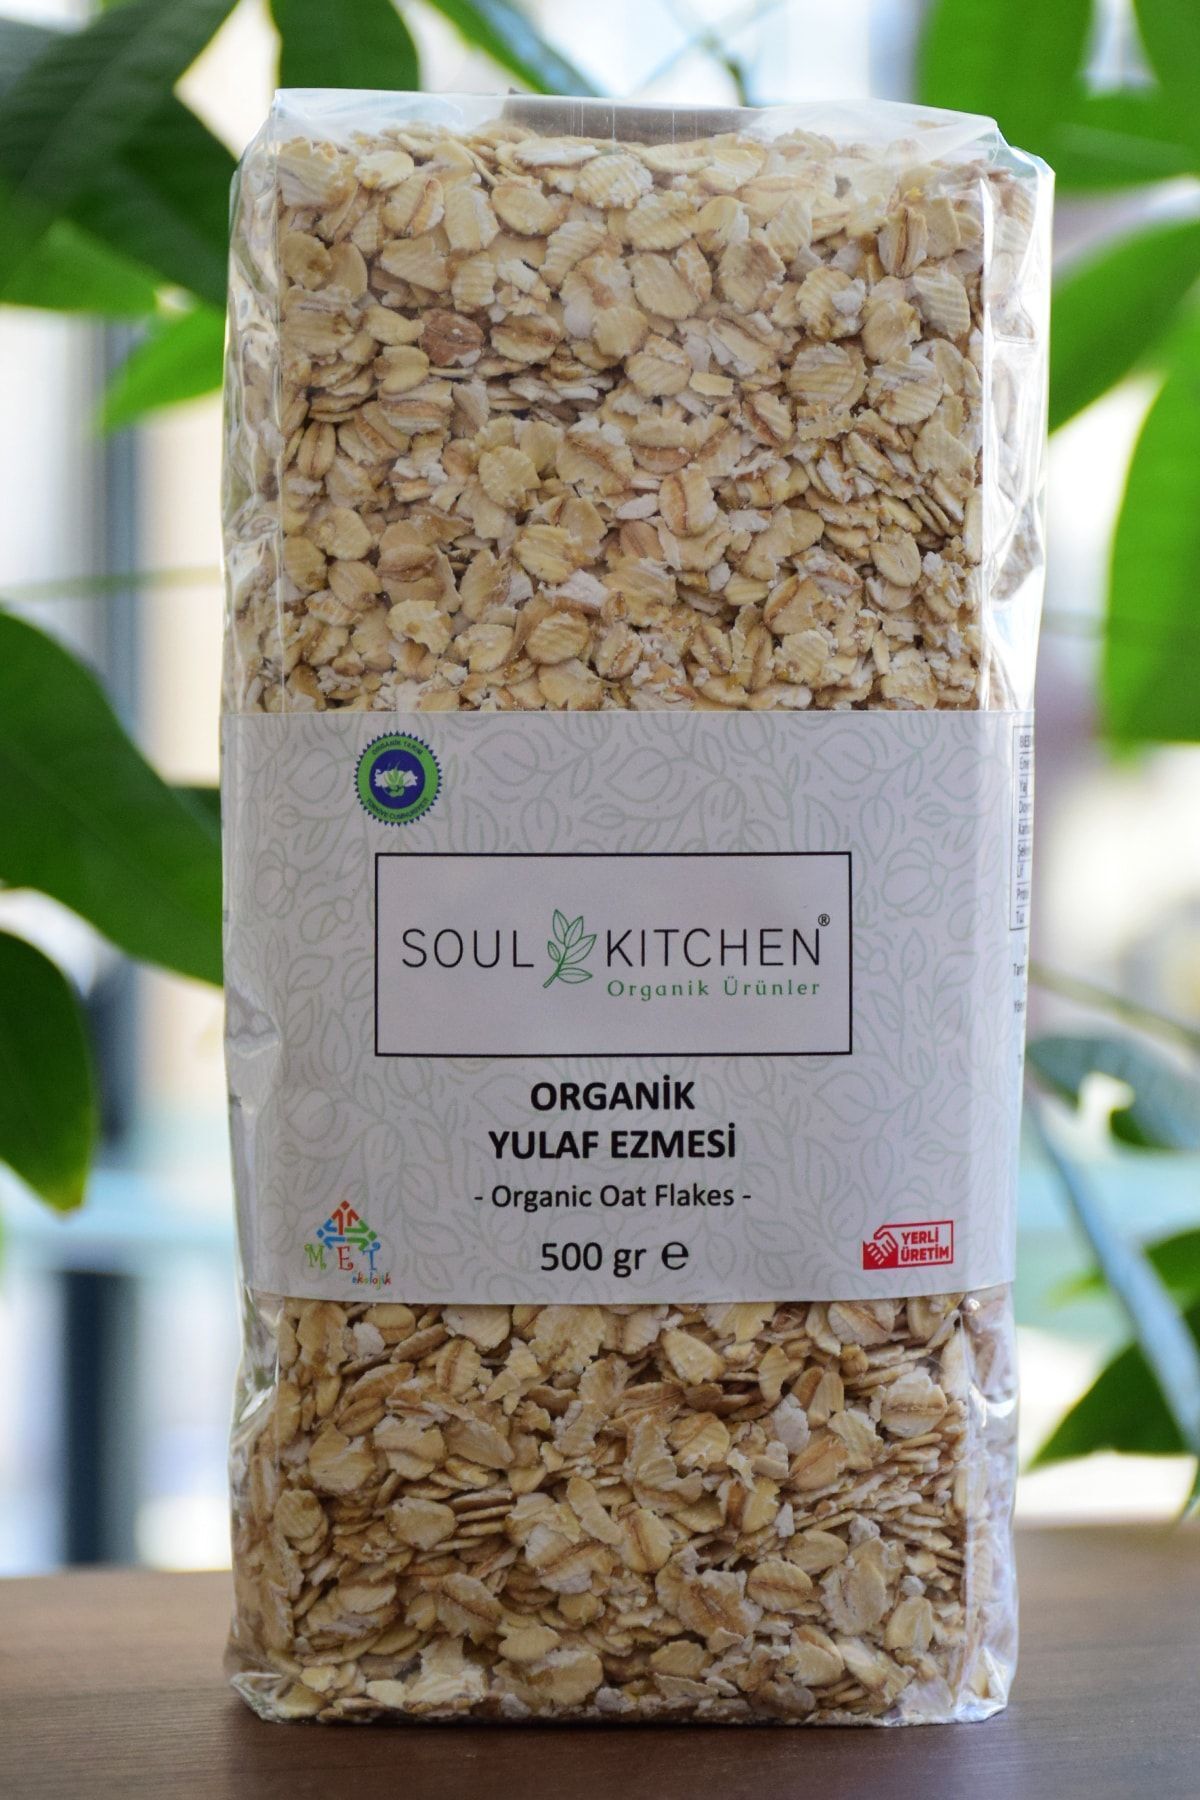 Soul Kitchen Organik Ürünler Organik Yulaf Ezmesi 500gr